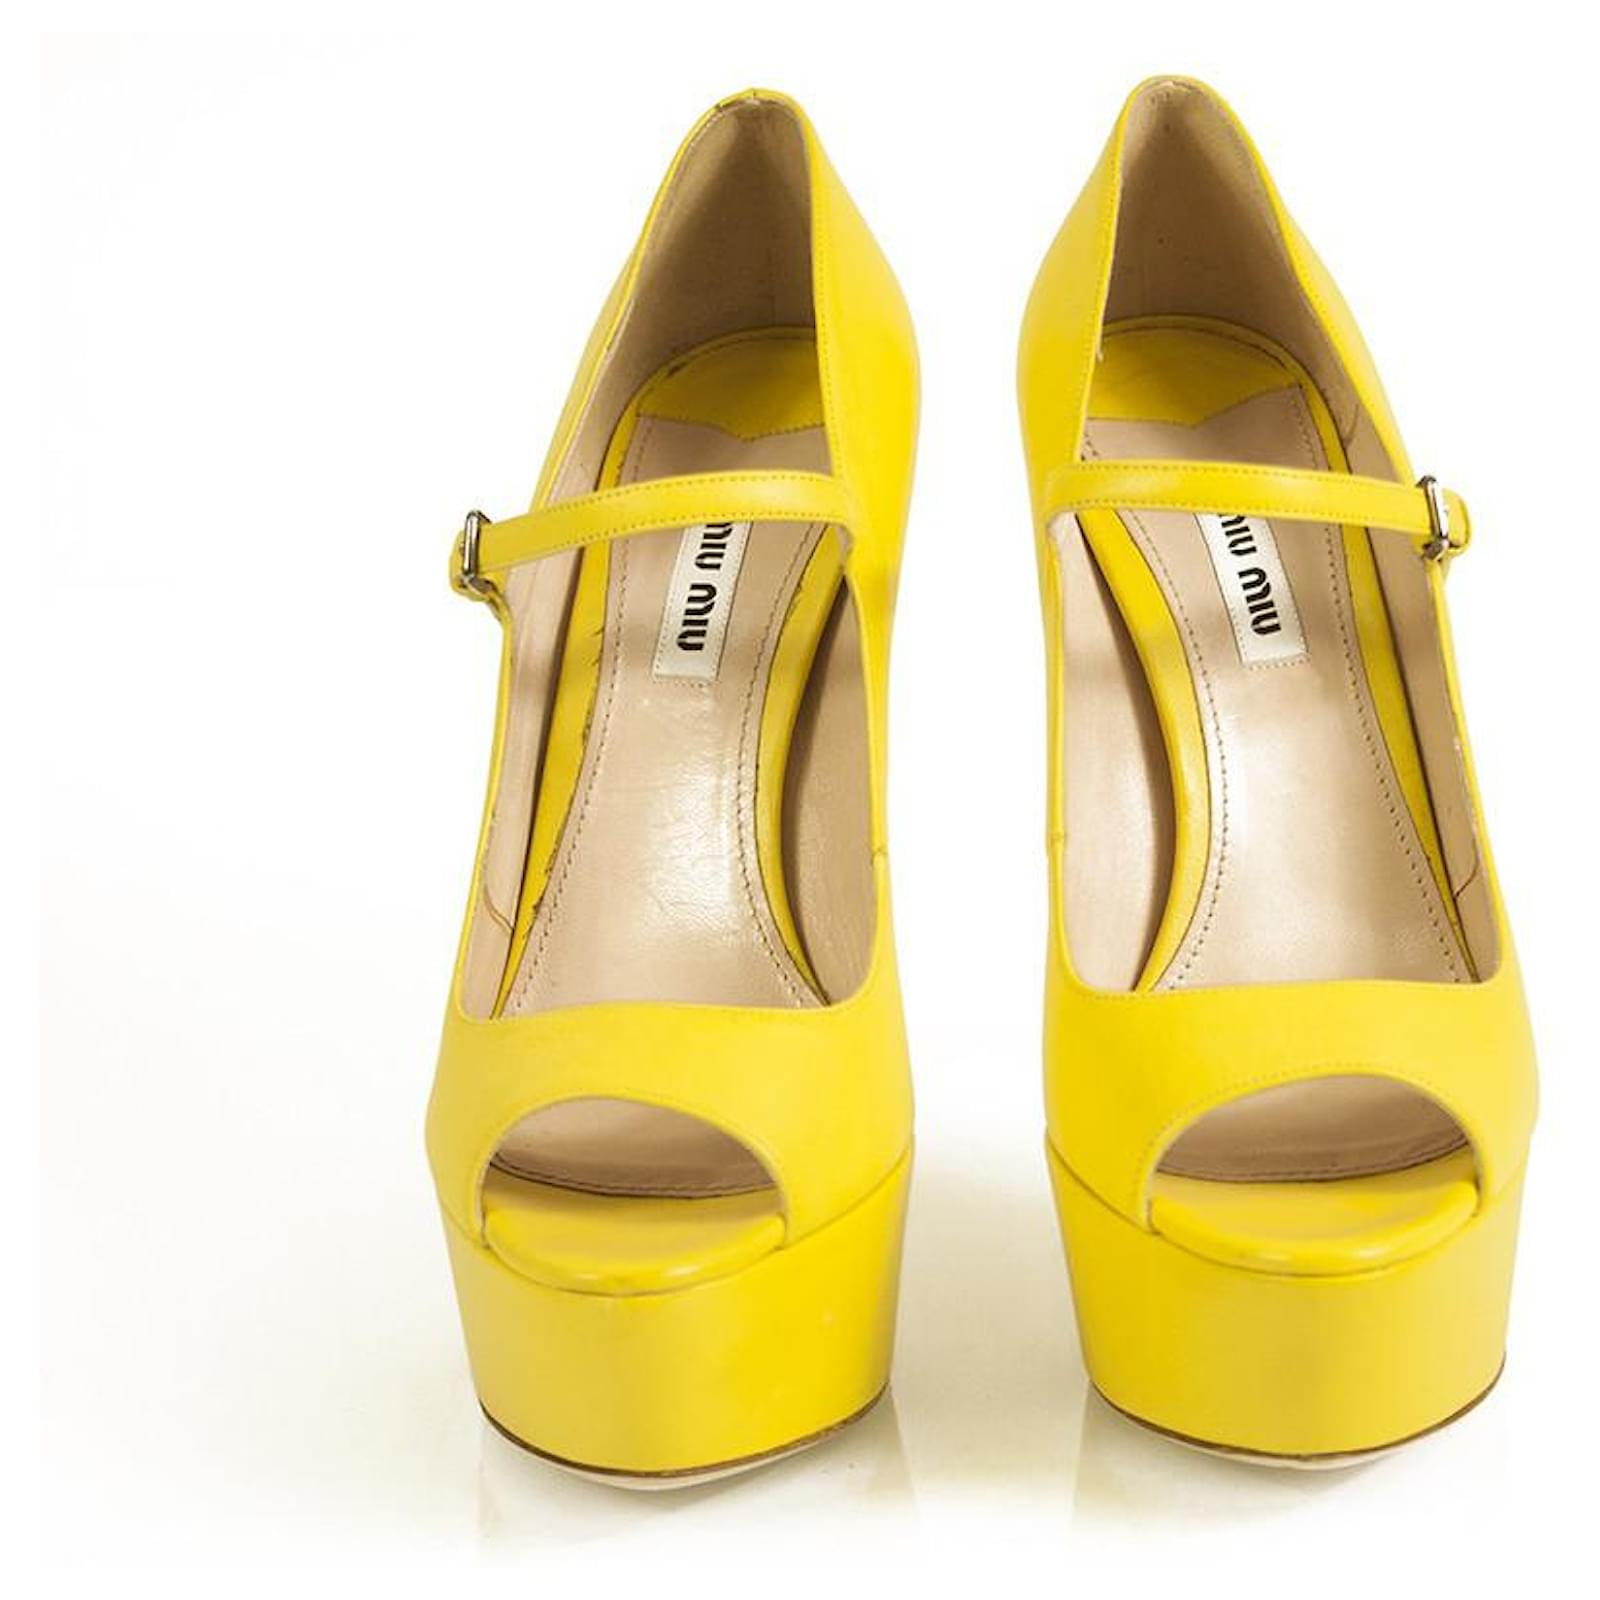 Women's Stiletto Heeled Sandals Summer Shoes Yellow CN35(5.5) - Walmart.com